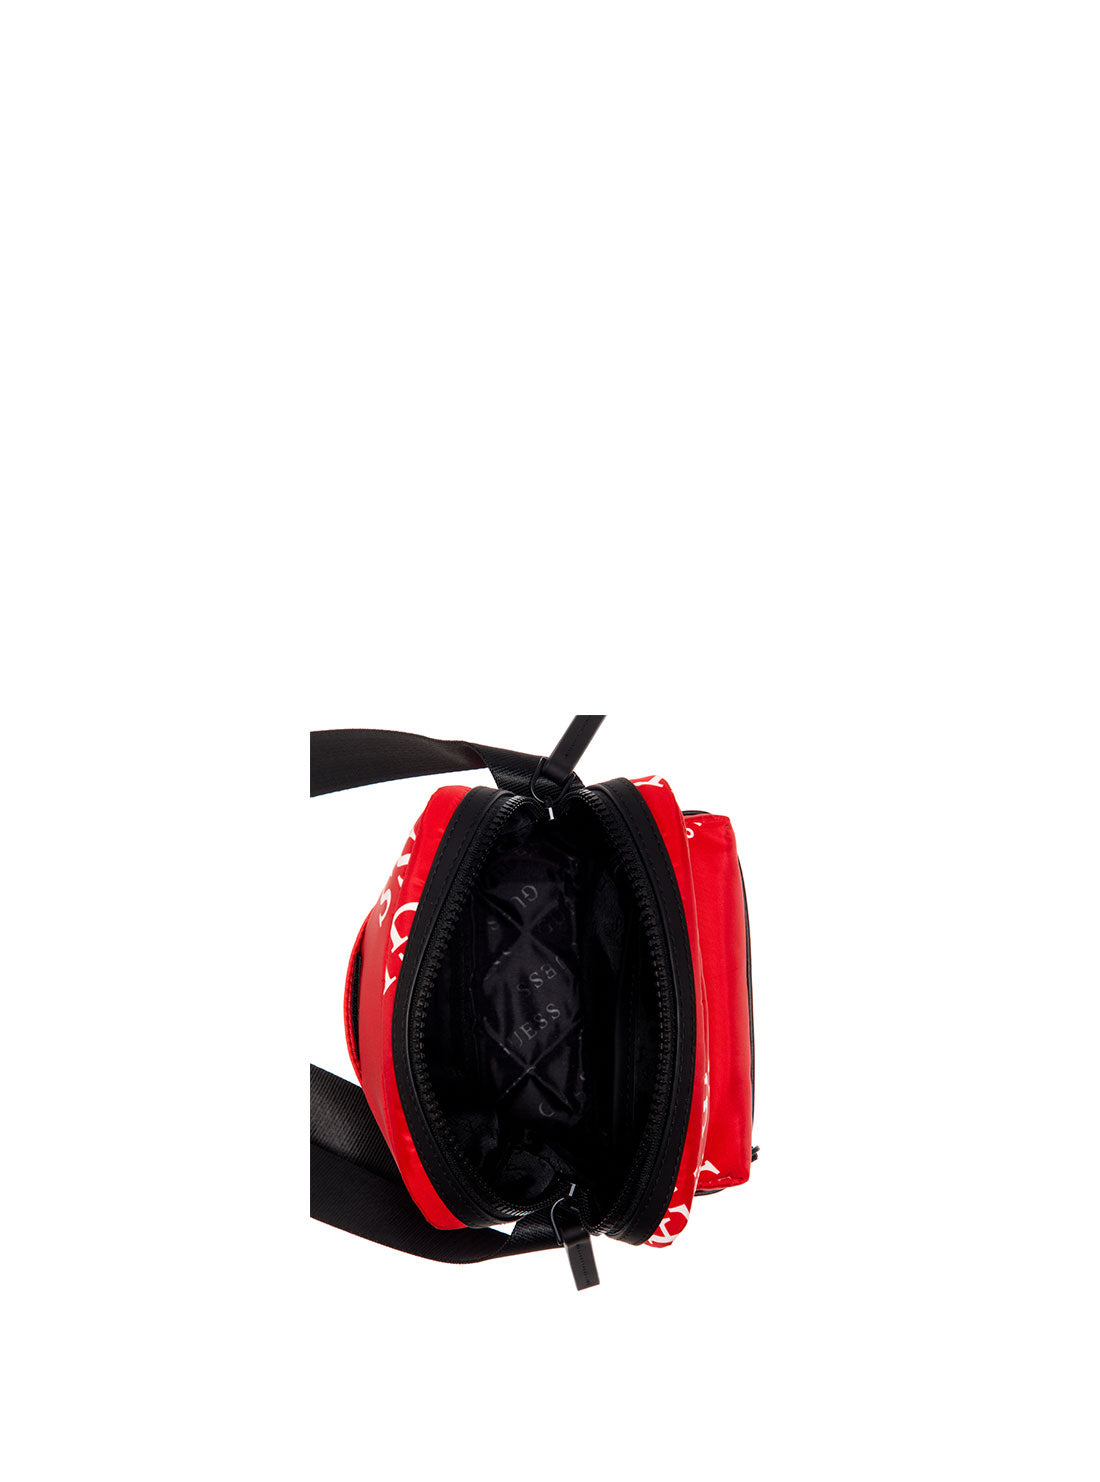 GUESS Men's Red Originals Logo Camera Bag TL703191 Inside View